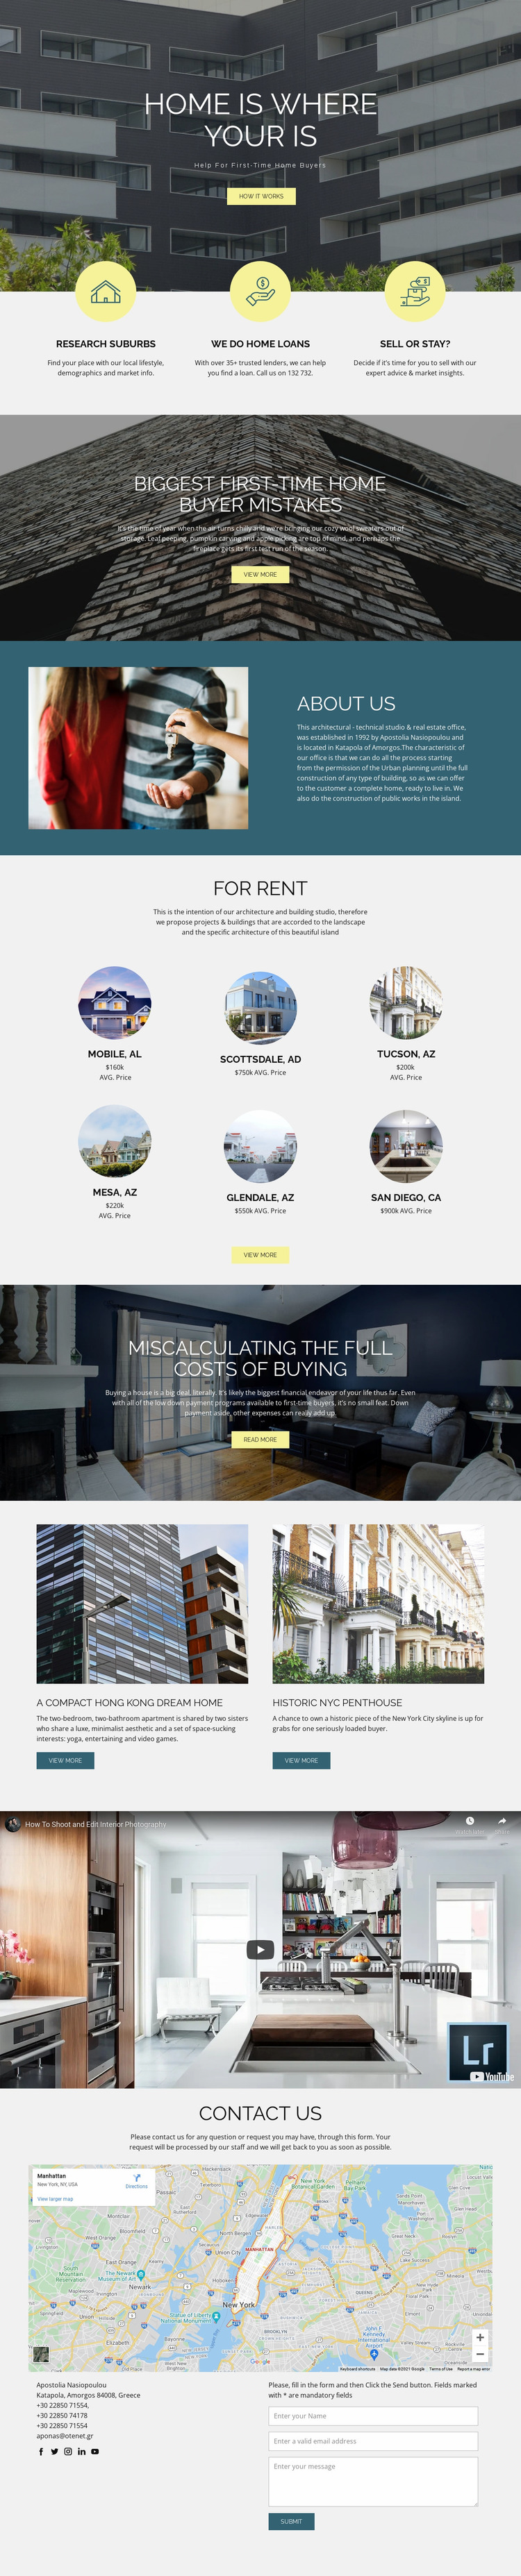 Home real estate Website Mockup